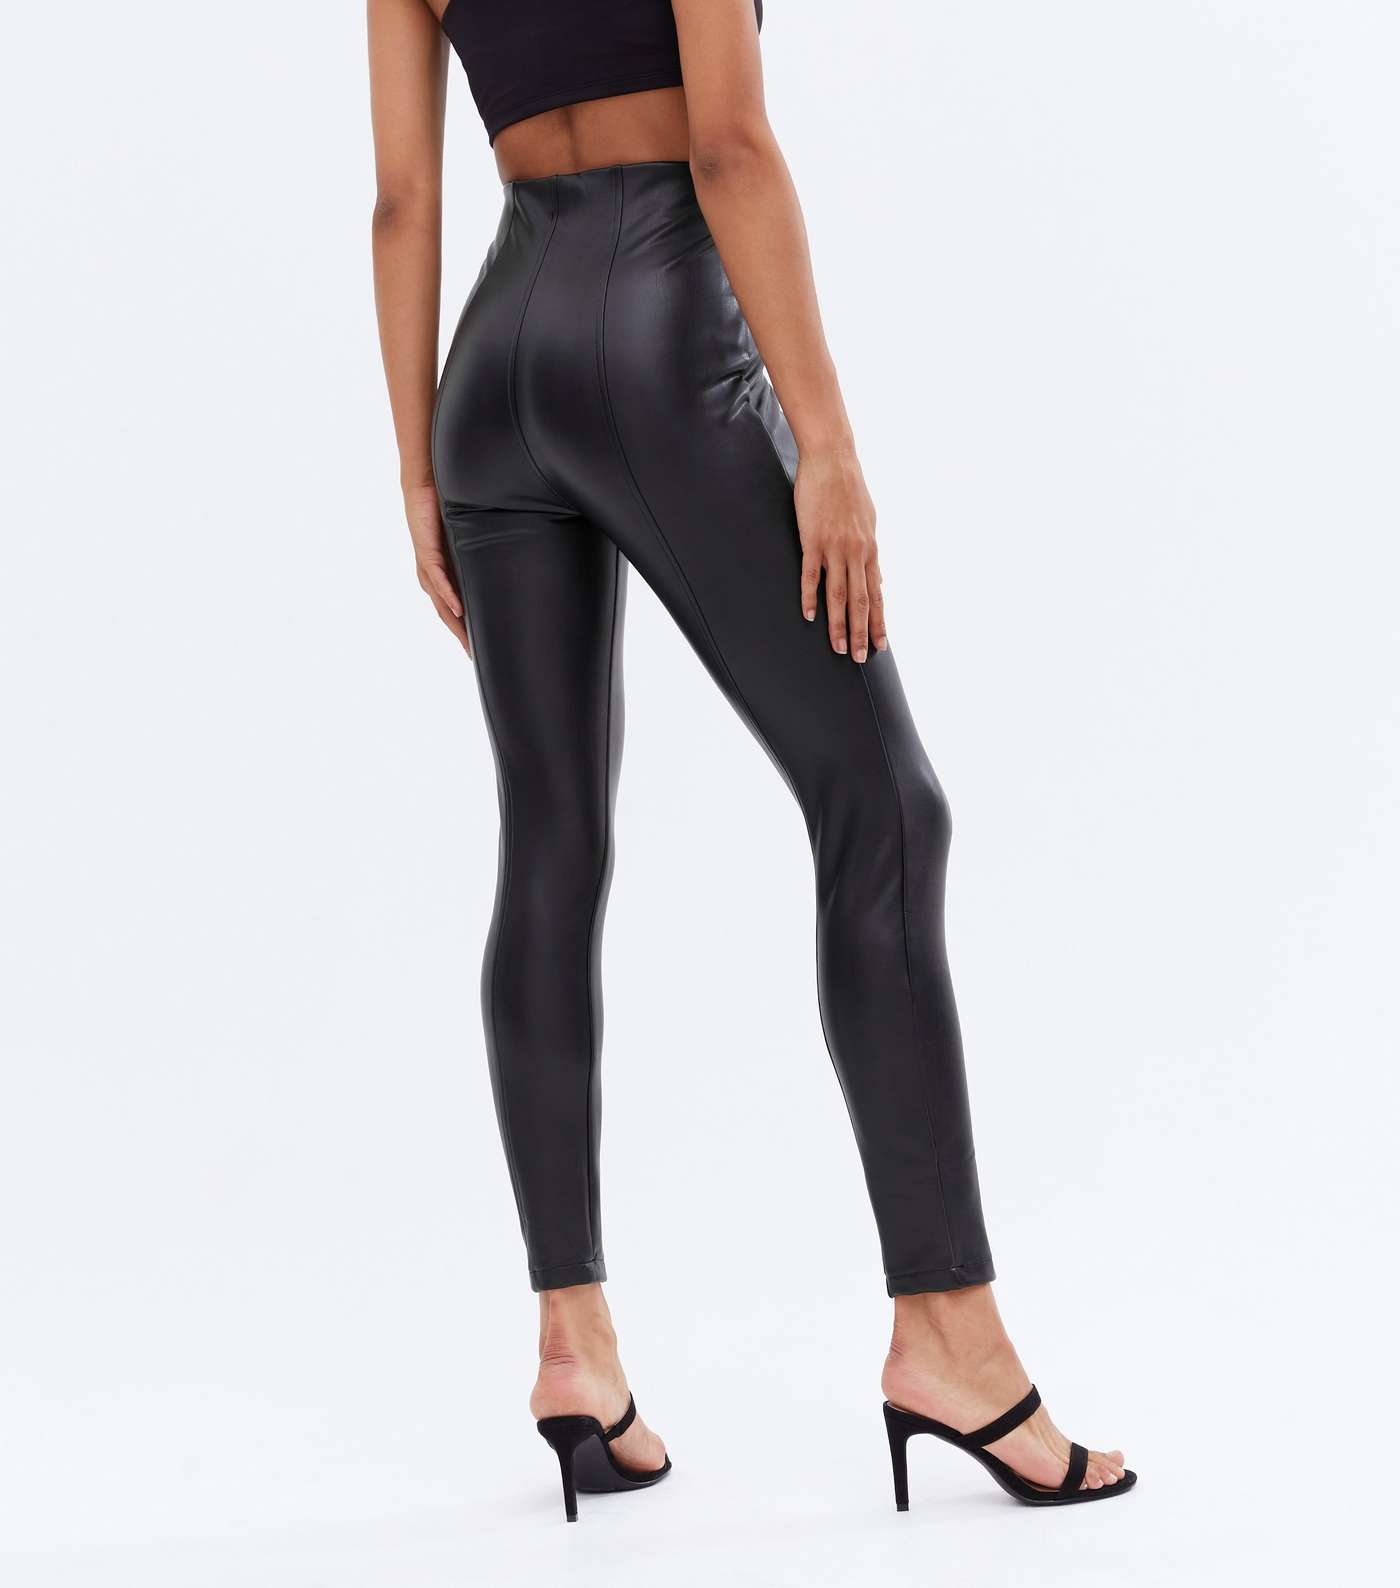 Black Leather-Look High Waist Zip Leggings Image 4